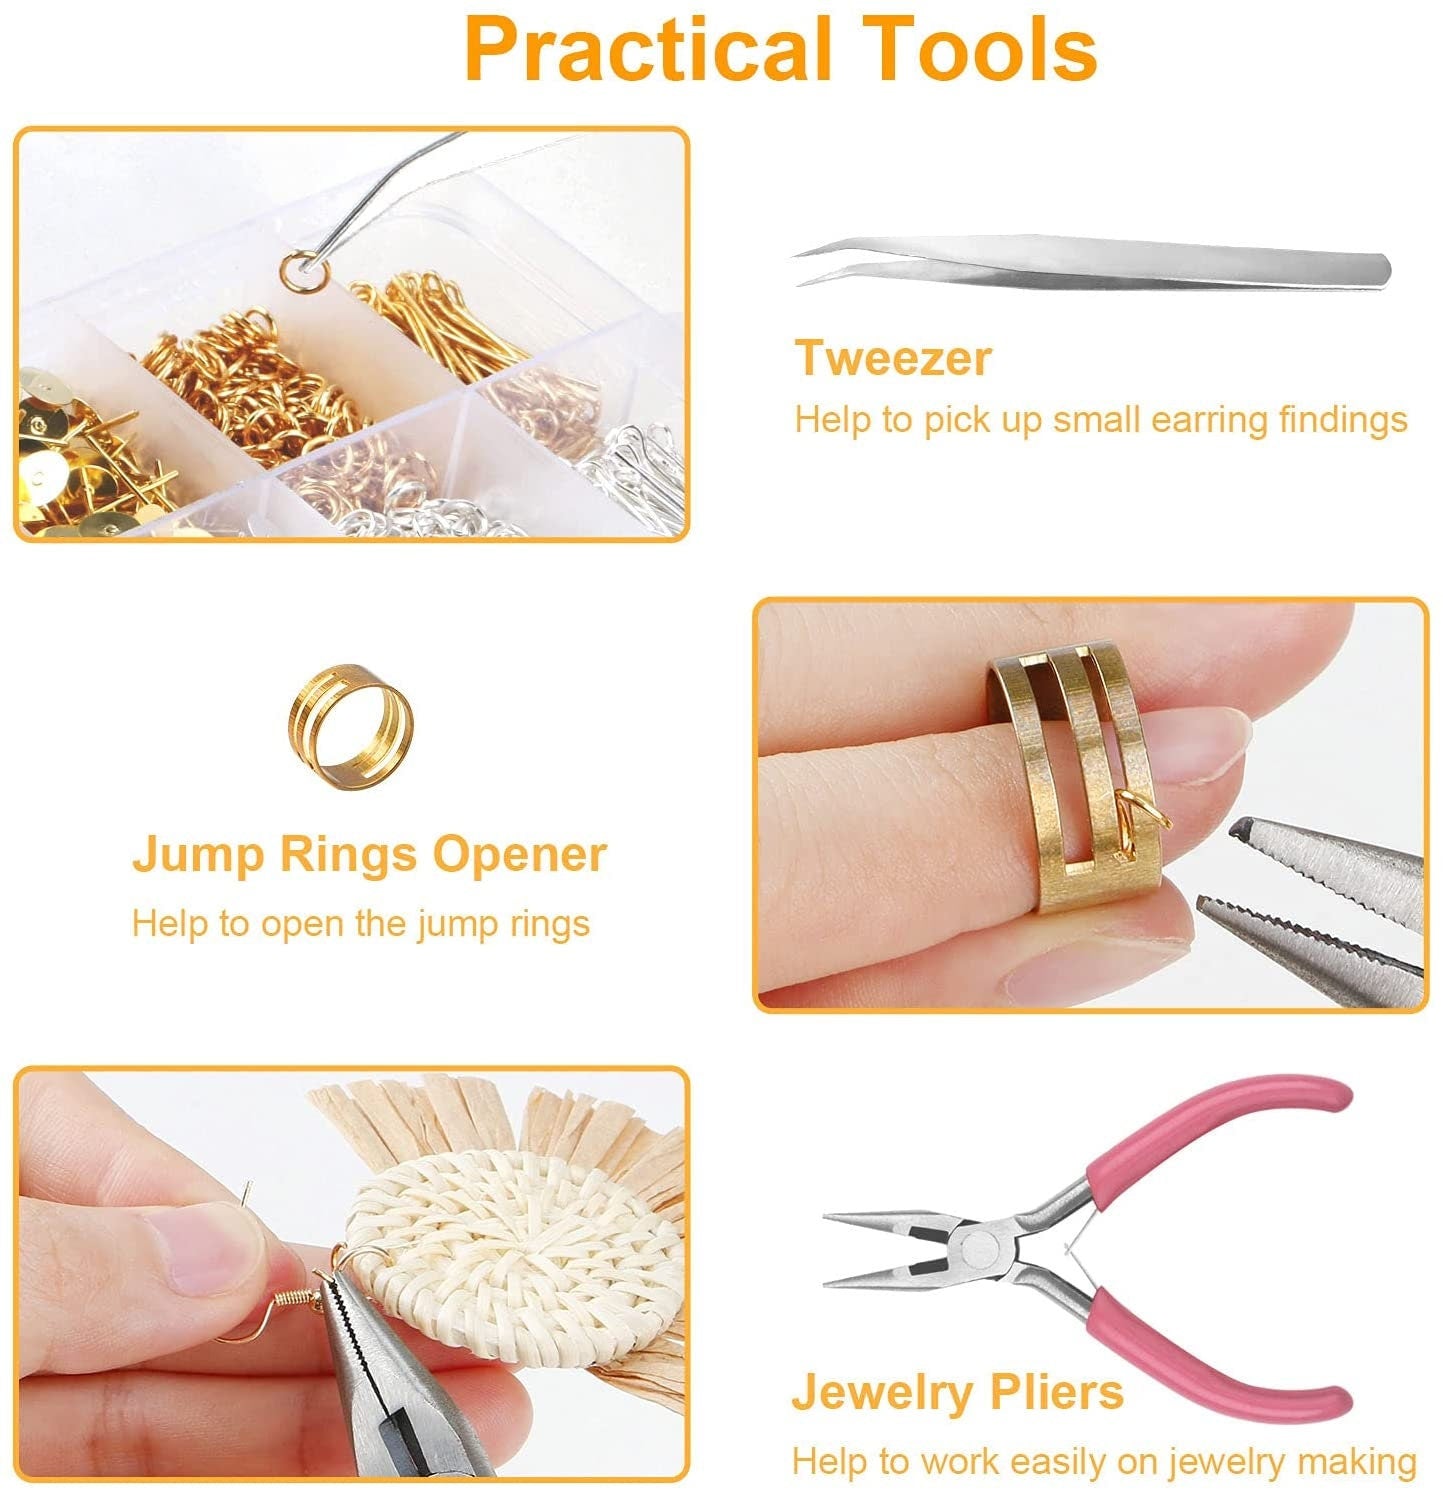 Earring Making Kit - 1560pc earring kit with tools - Eye Pins - Earring Hooks - Earring Backs - Jump Rings - Great starter kit for Jewelry